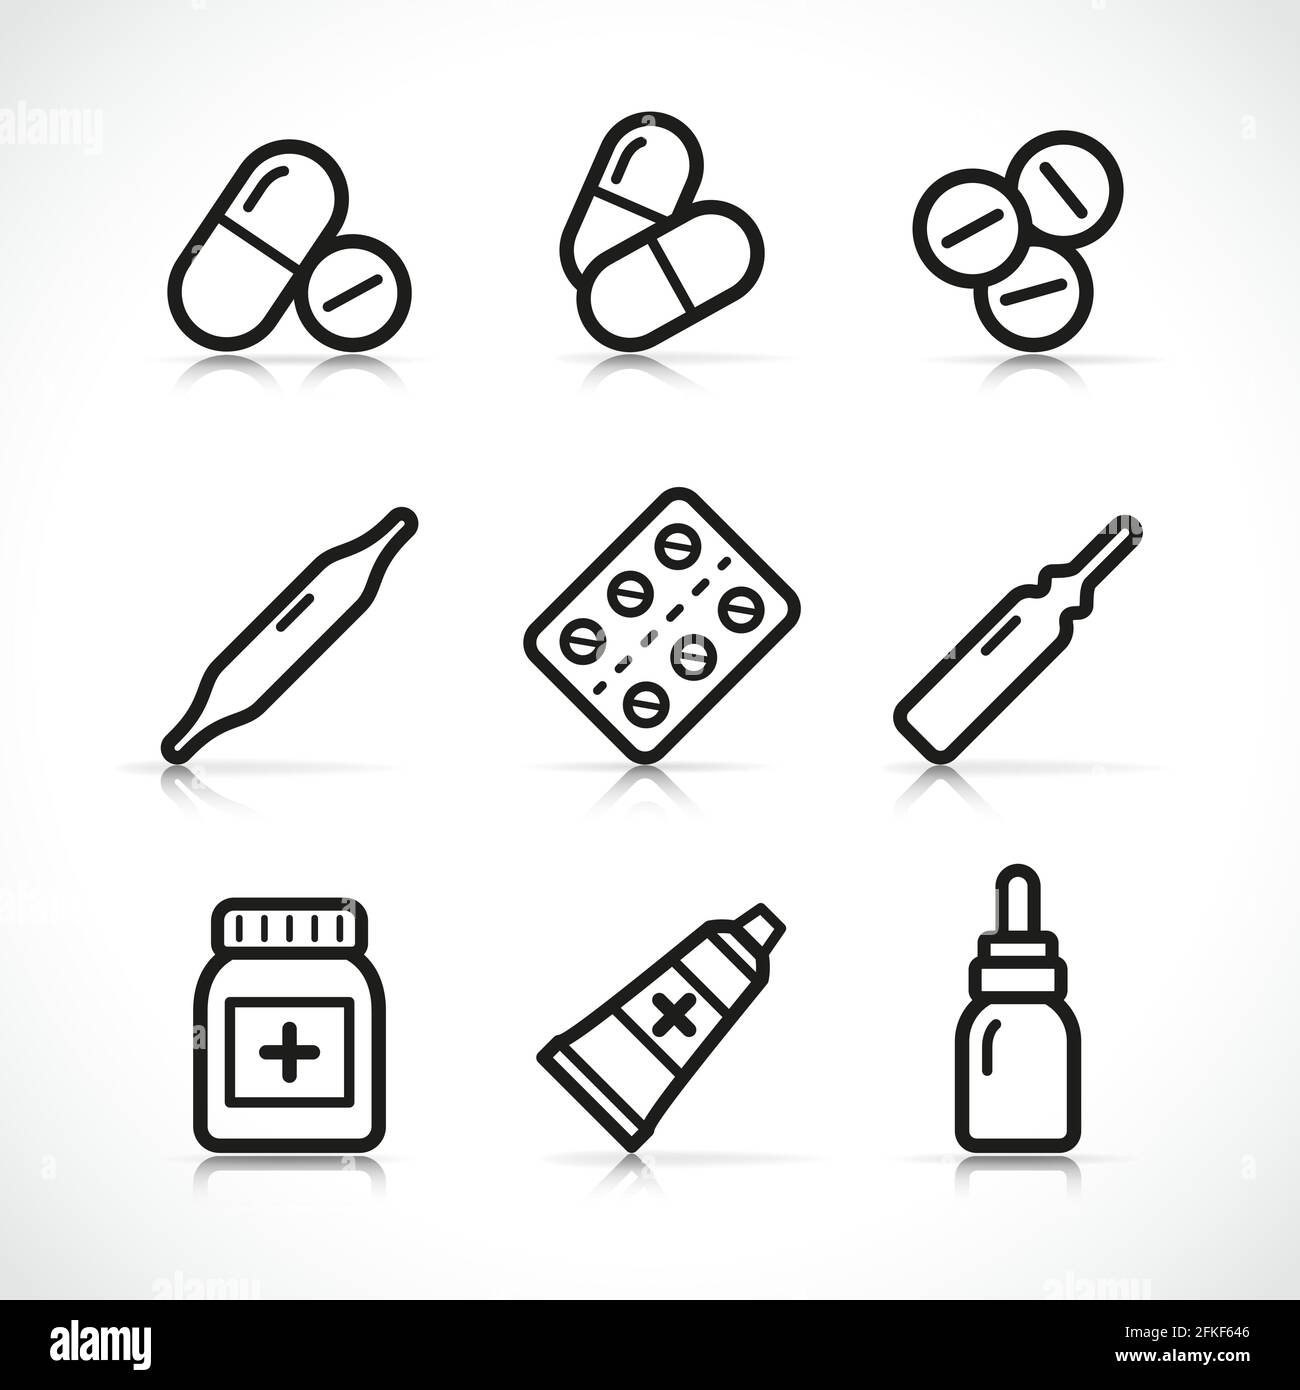 Illustrazione vettoriale del set di icone di pillole isolate Illustrazione Vettoriale